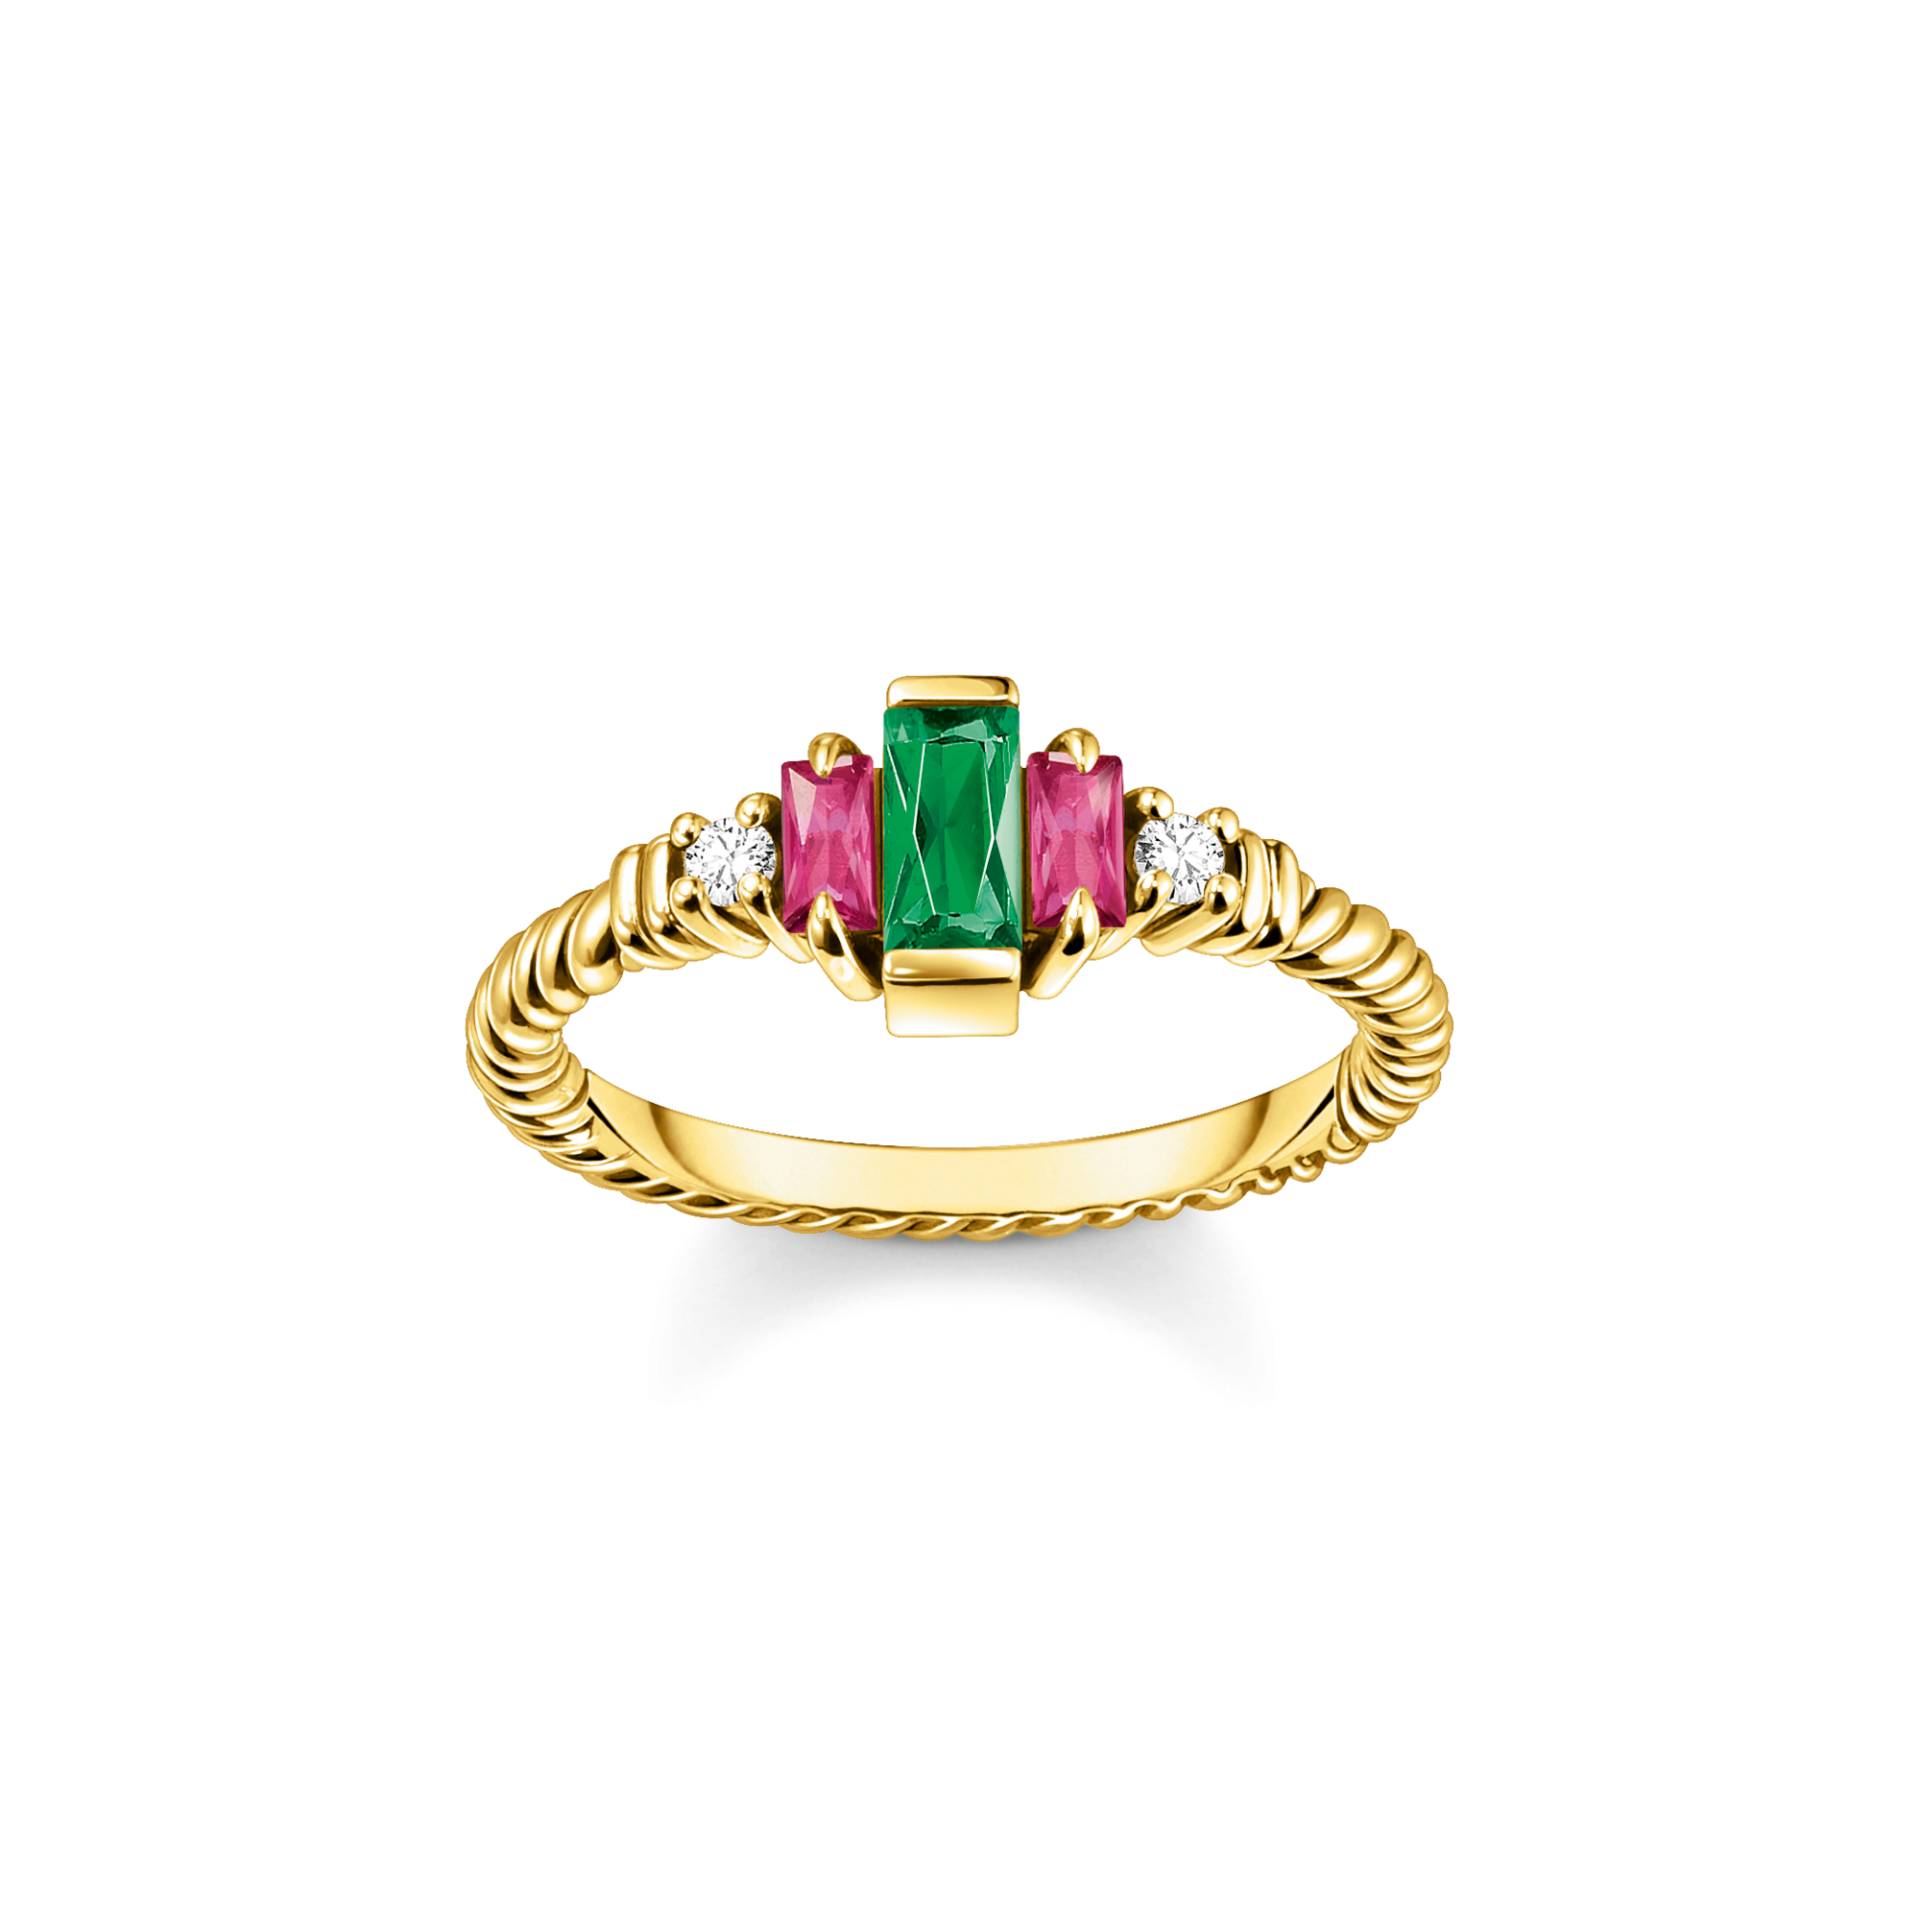 Thomas Sabo Ring Kordel mit grünen und roten Steinen vergoldet mehrfarbig TR2428-488-7-50 von Thomas Sabo